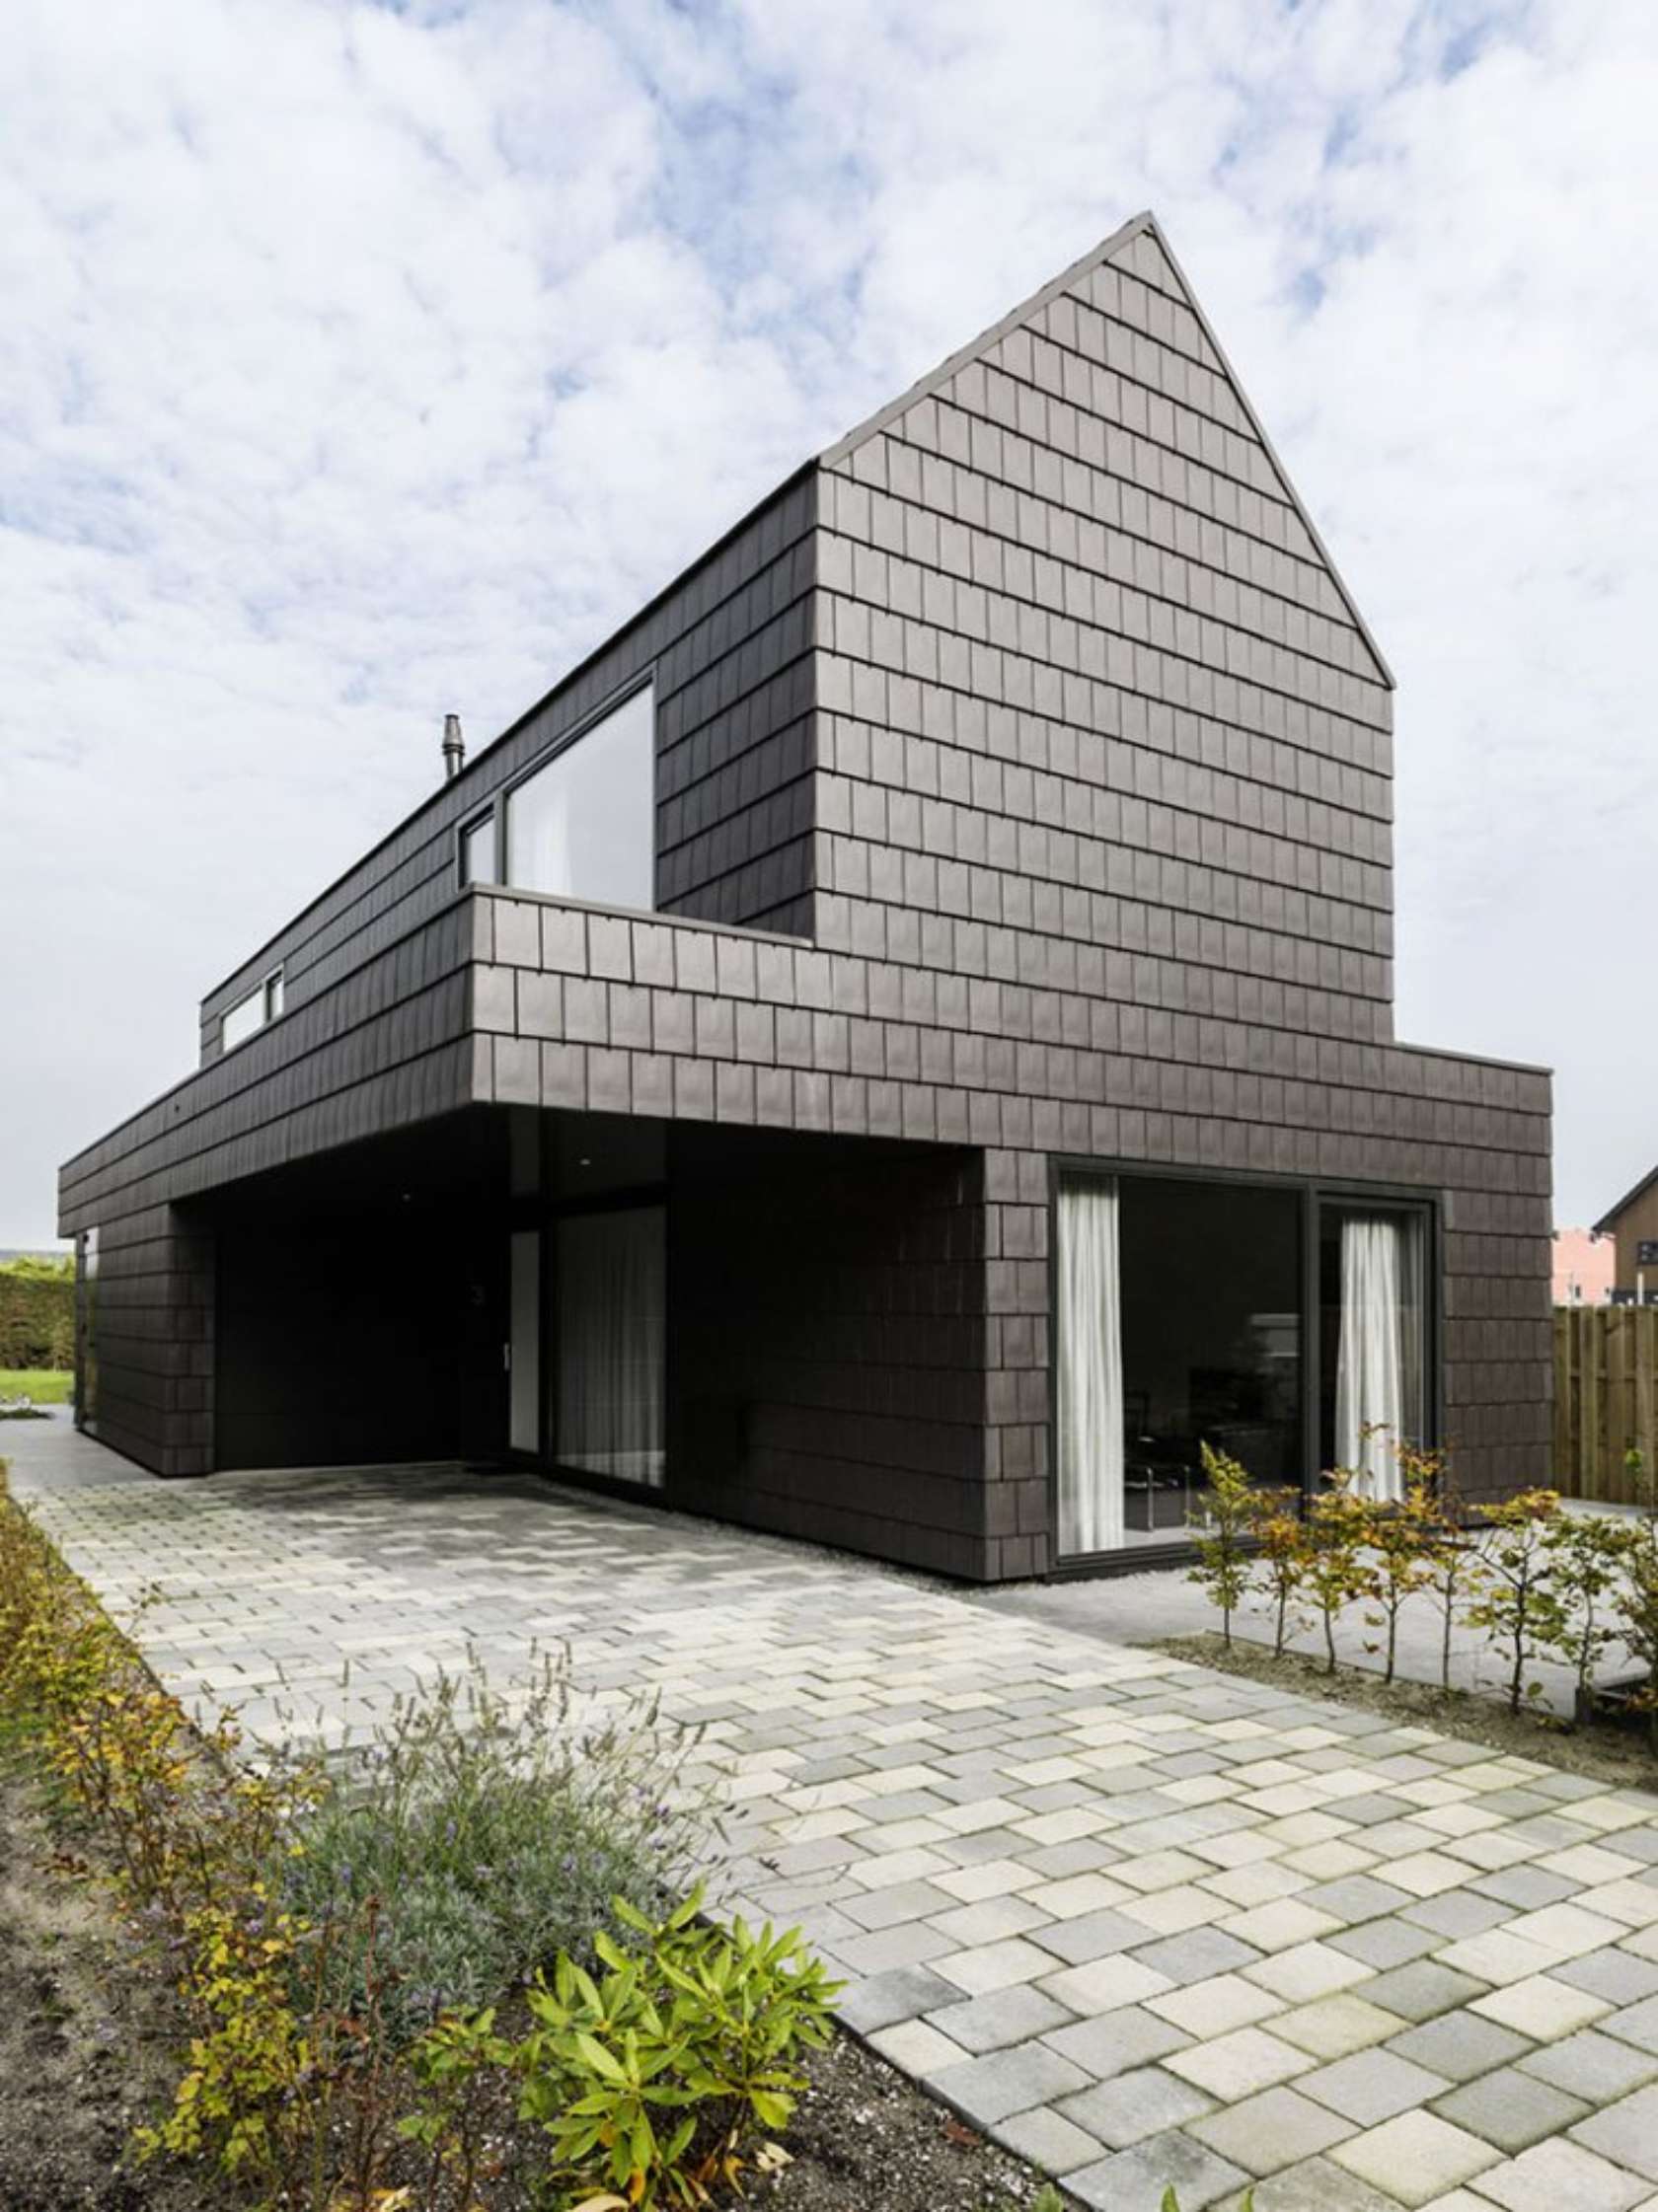 Дом v. Современный голландский стиль в архитектуре. Черный современный дом. Черный фасад. Современные дома в голландском стиле.